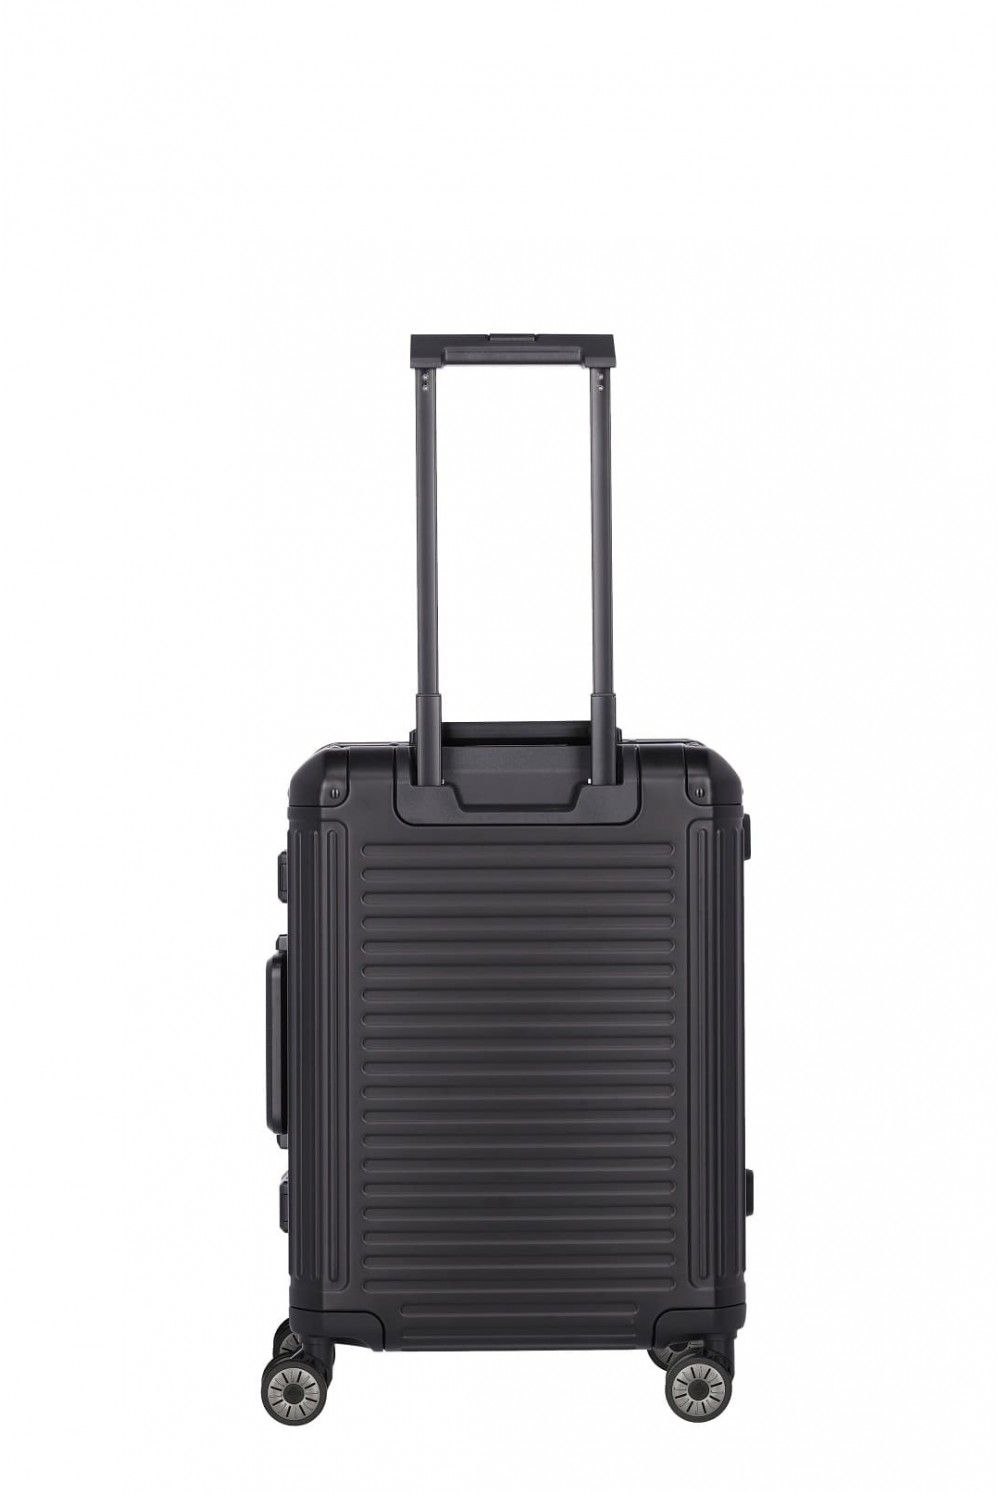 Valise aluminium Travelite NEXT 55 bagage à main 4 roues